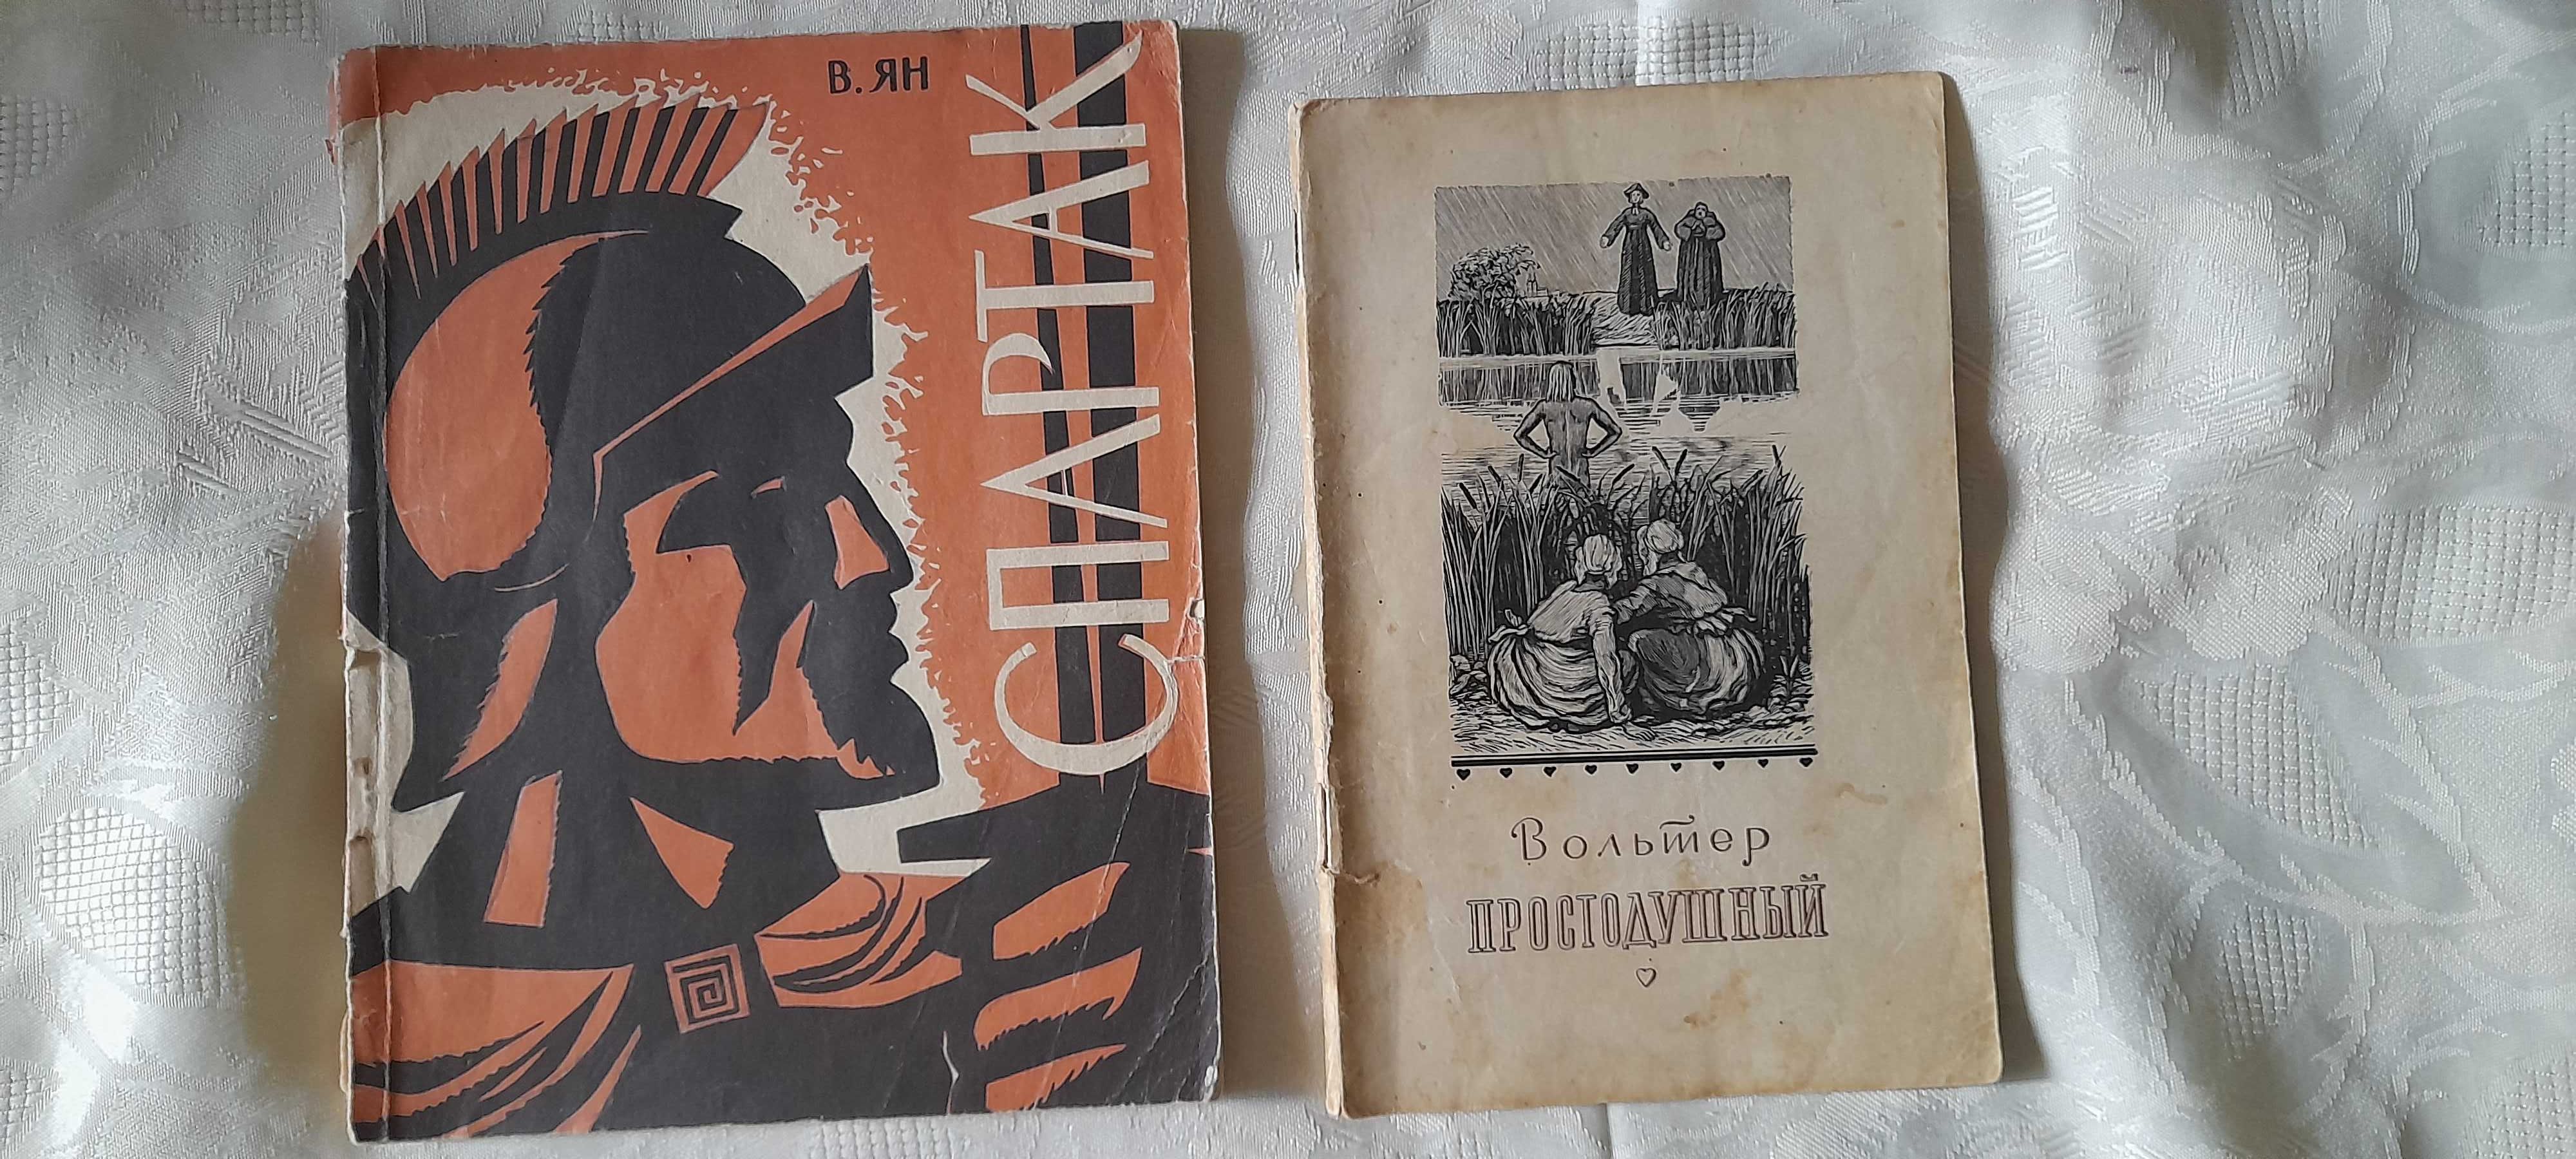 книги времен СССР 1956 и 1965 годов